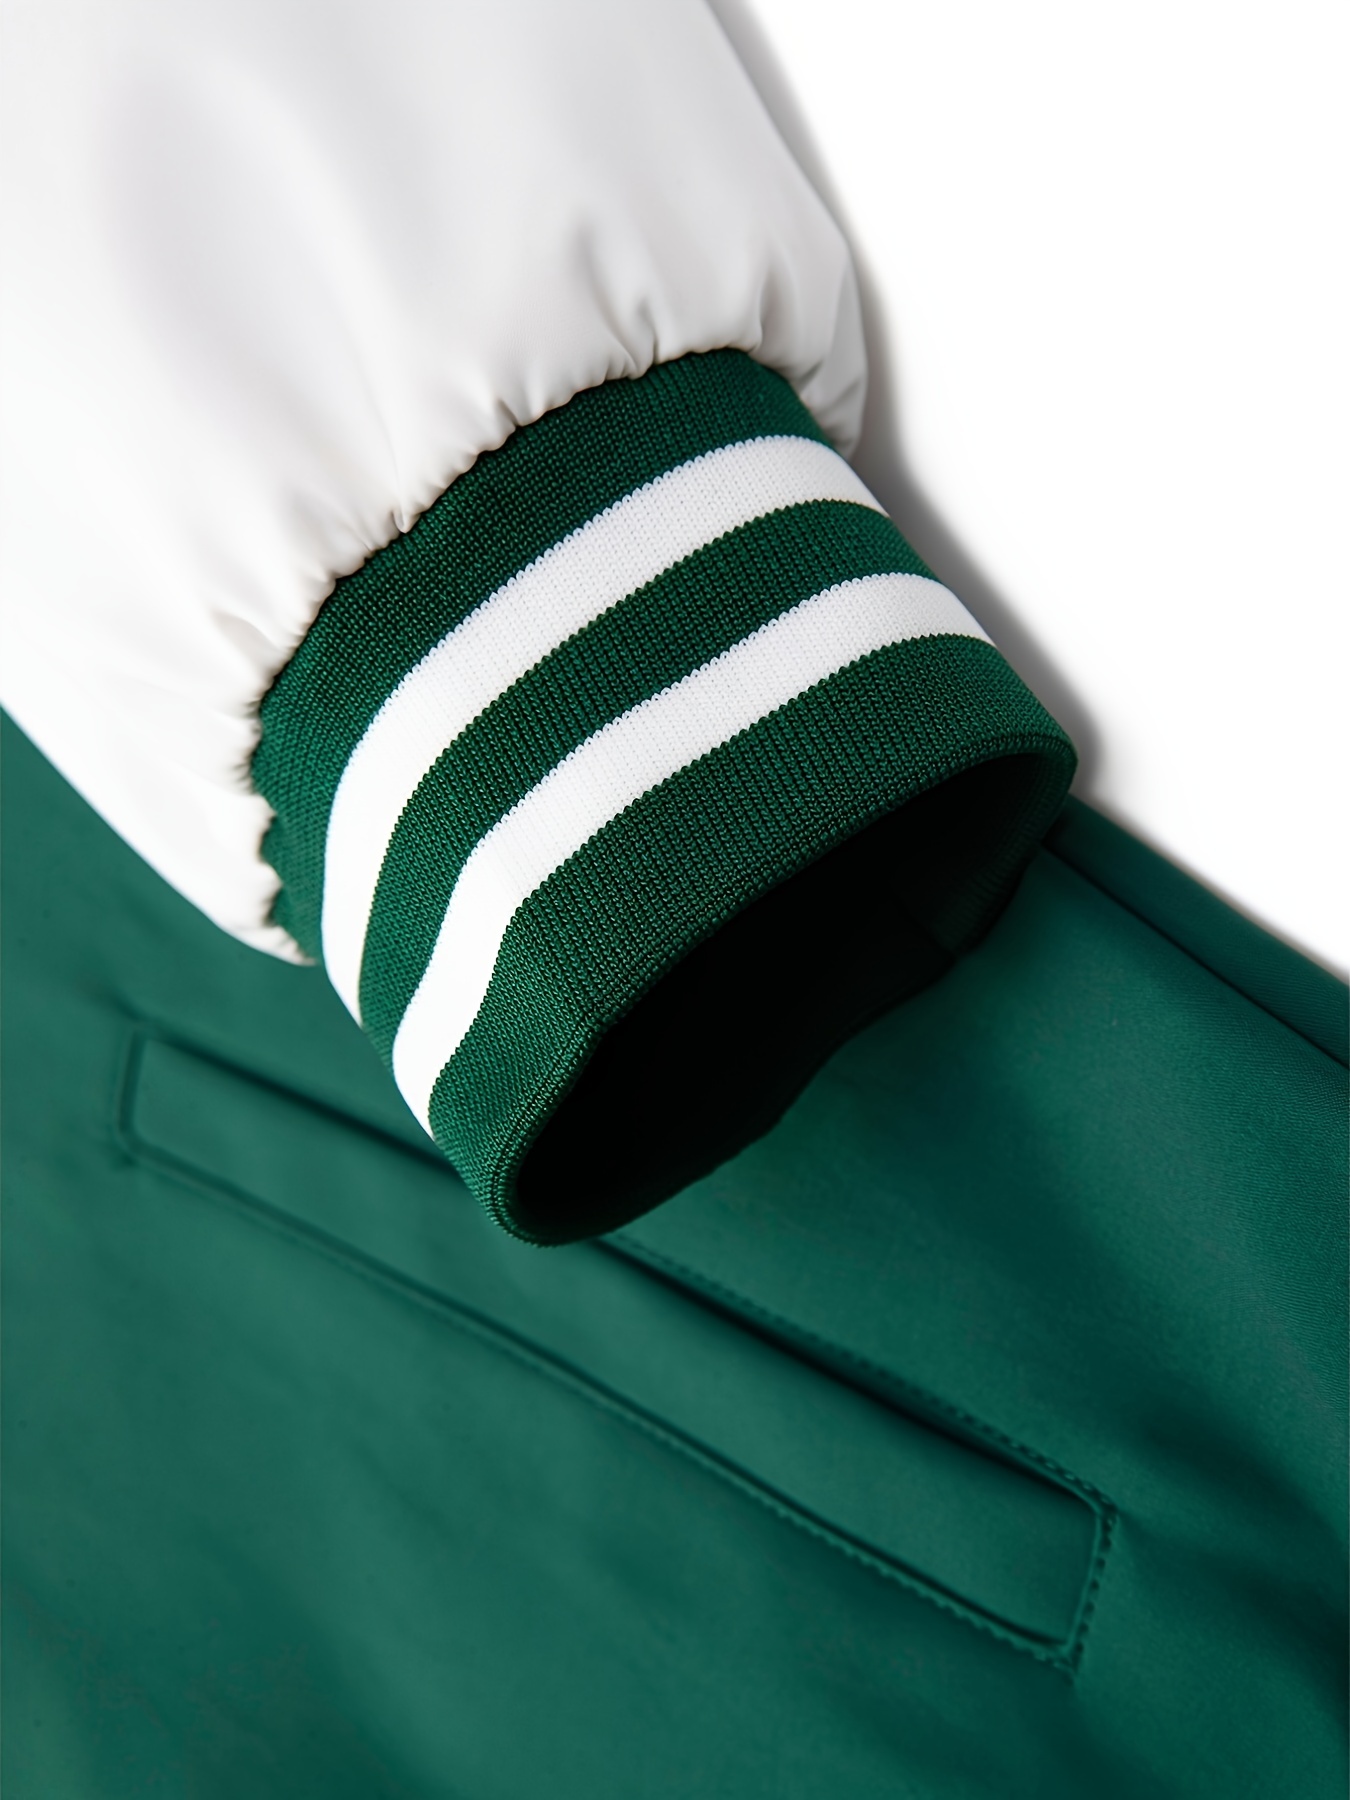 New Men's Pro Baseball Varsity Jacket Dark Green & White Collared All Sizes